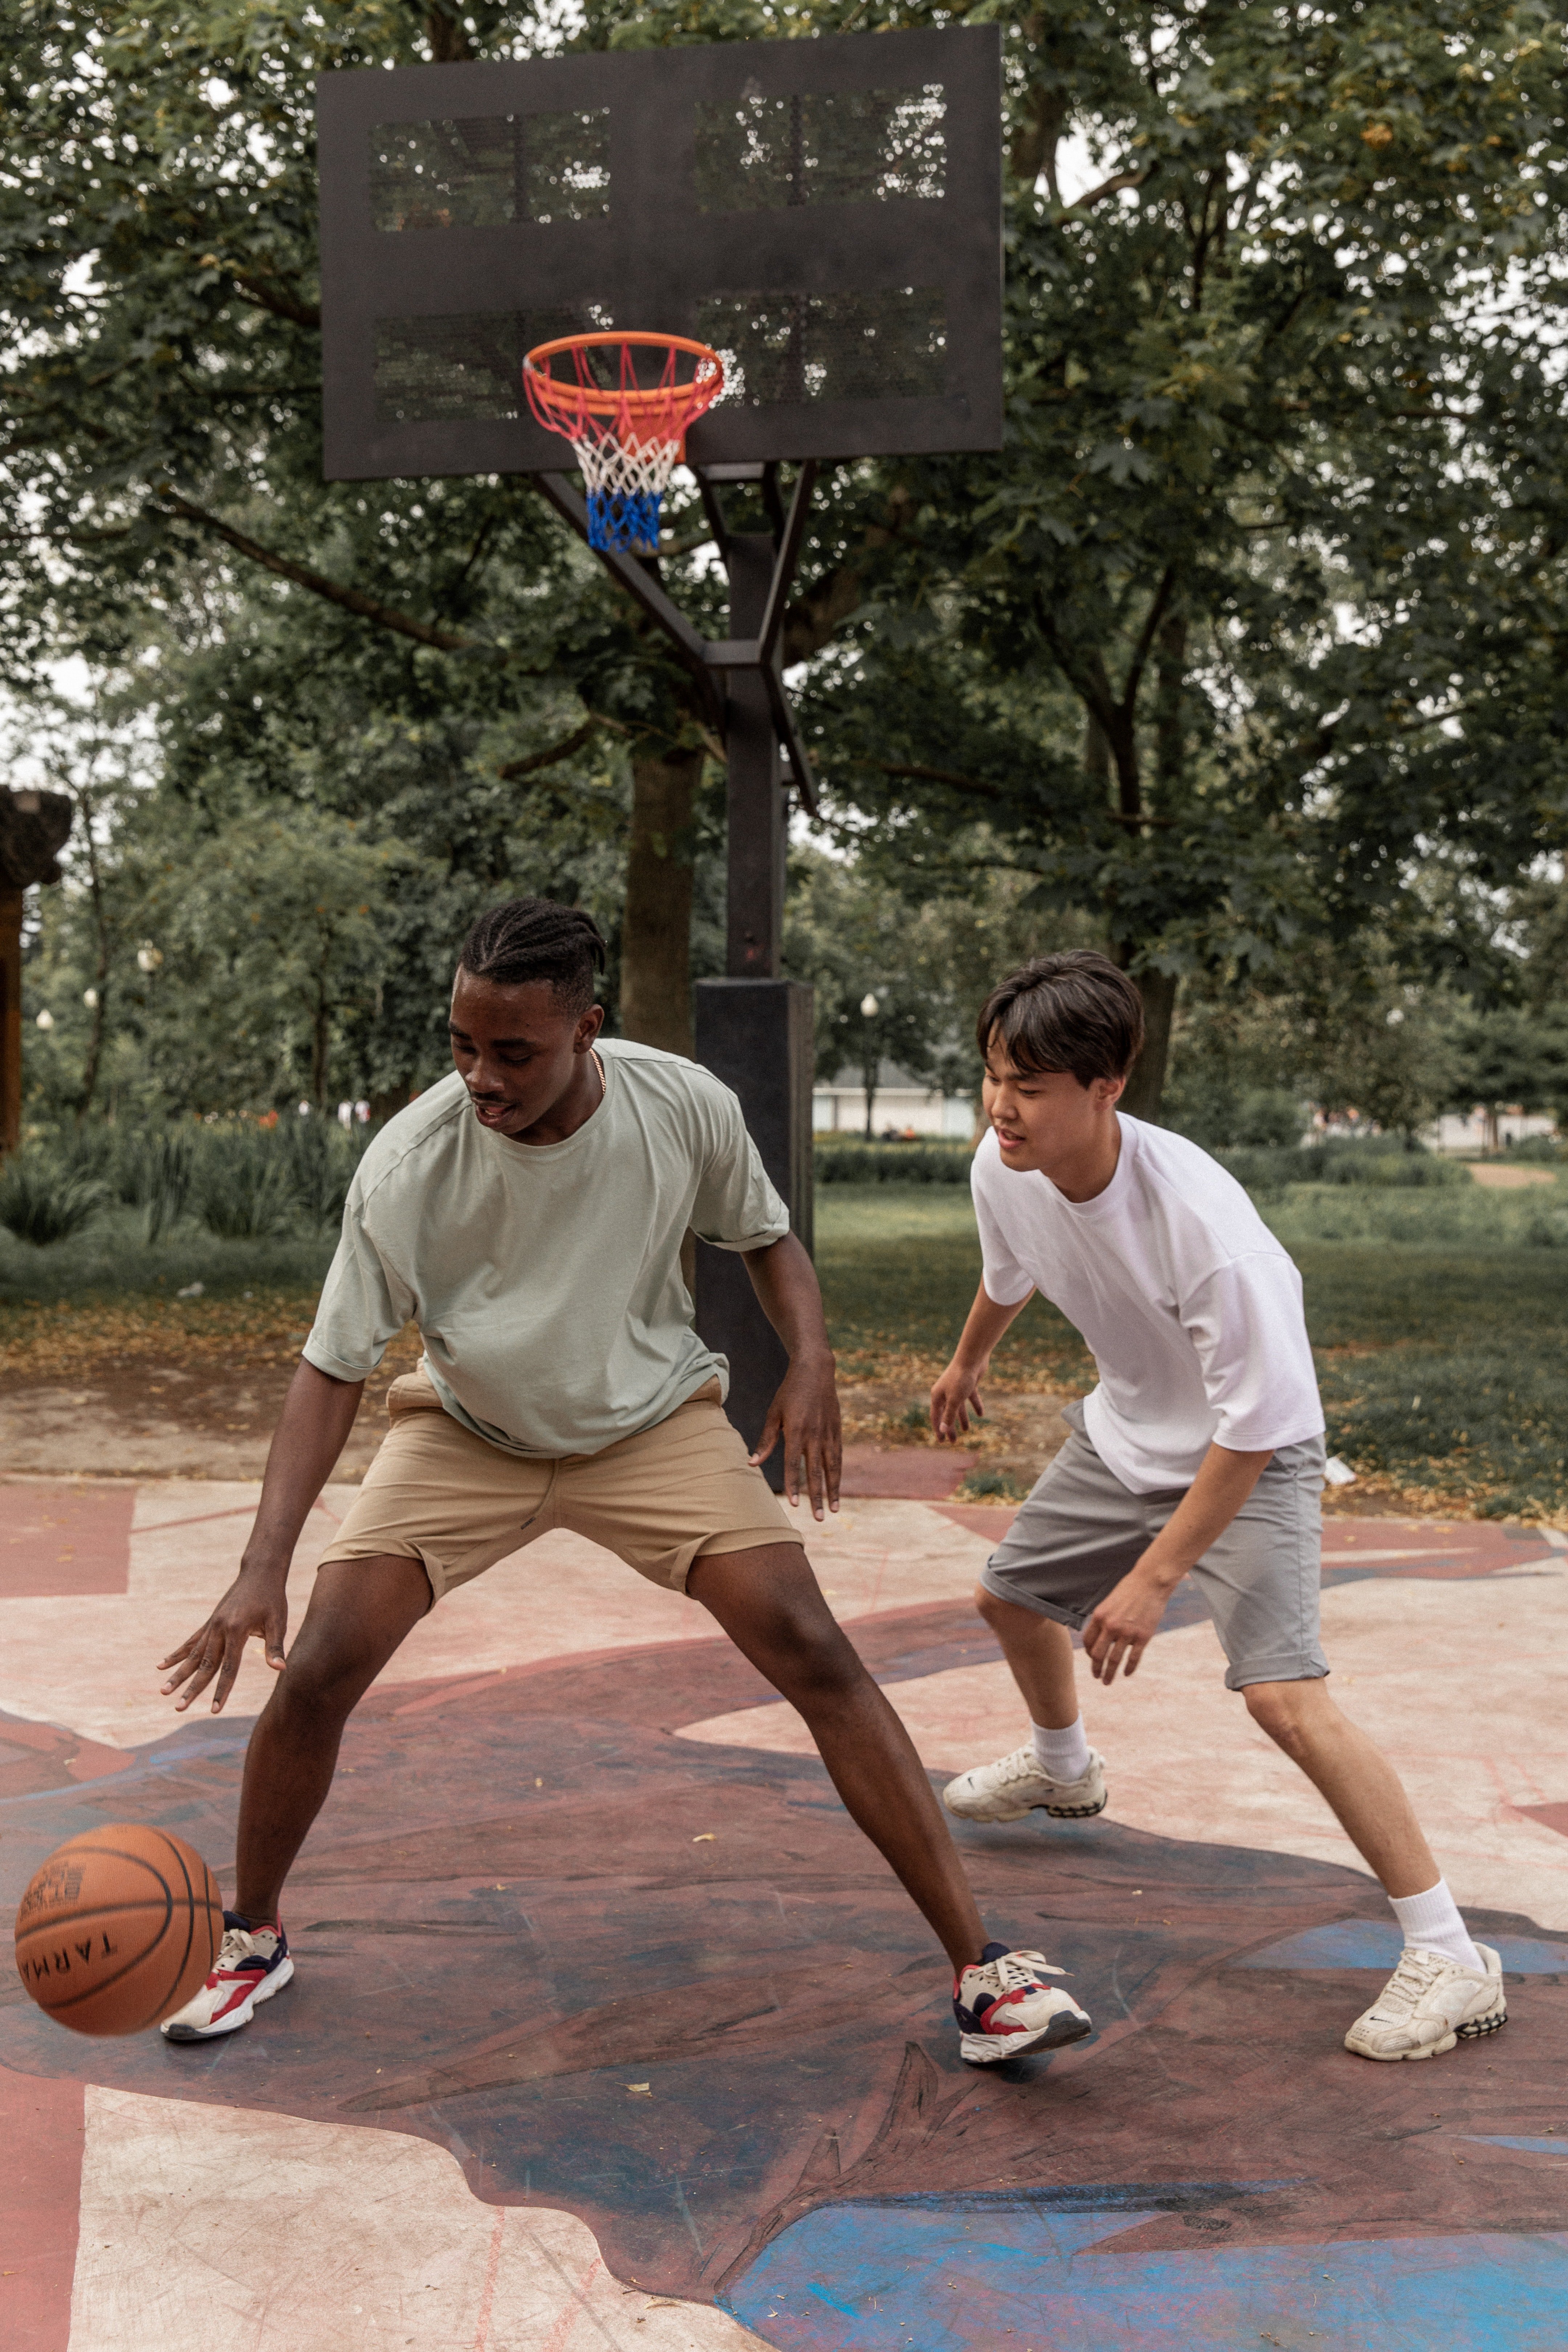 Sie gingen zum Basketballplatz gleich die Straße runter, um mit Mia zu spielen. | Quelle: Pexels